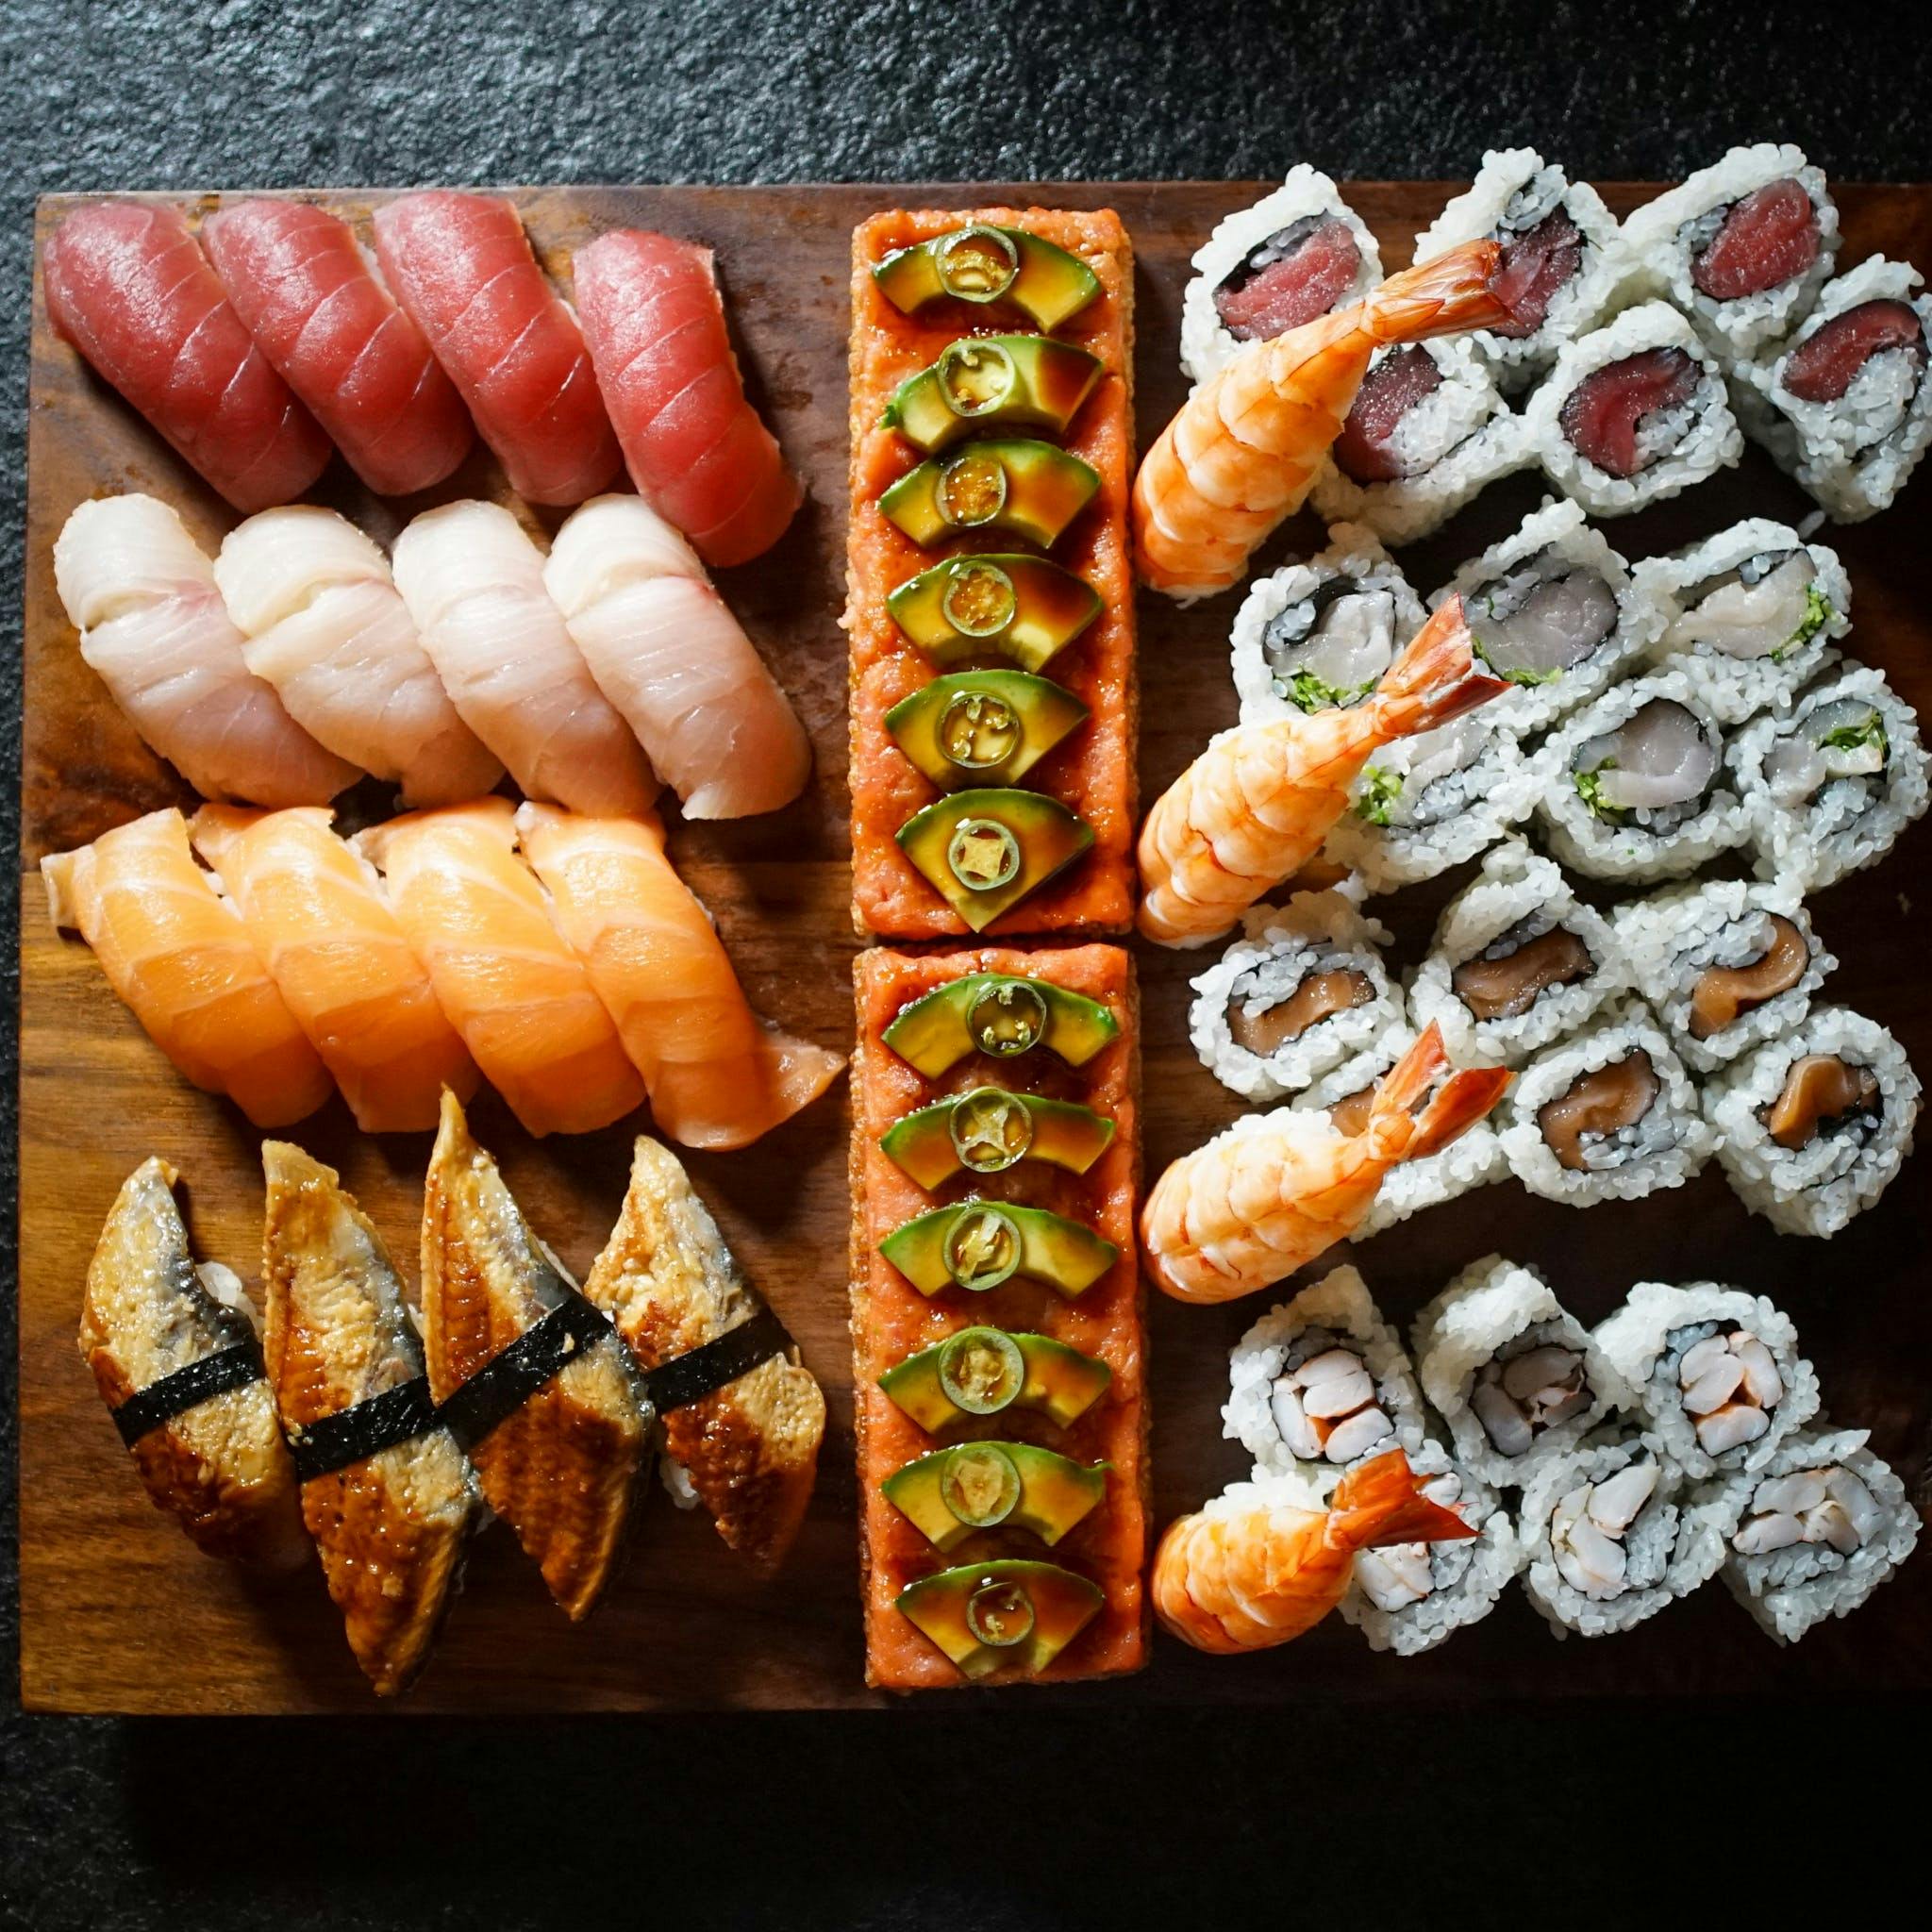 At Home Sushi Chef Kits